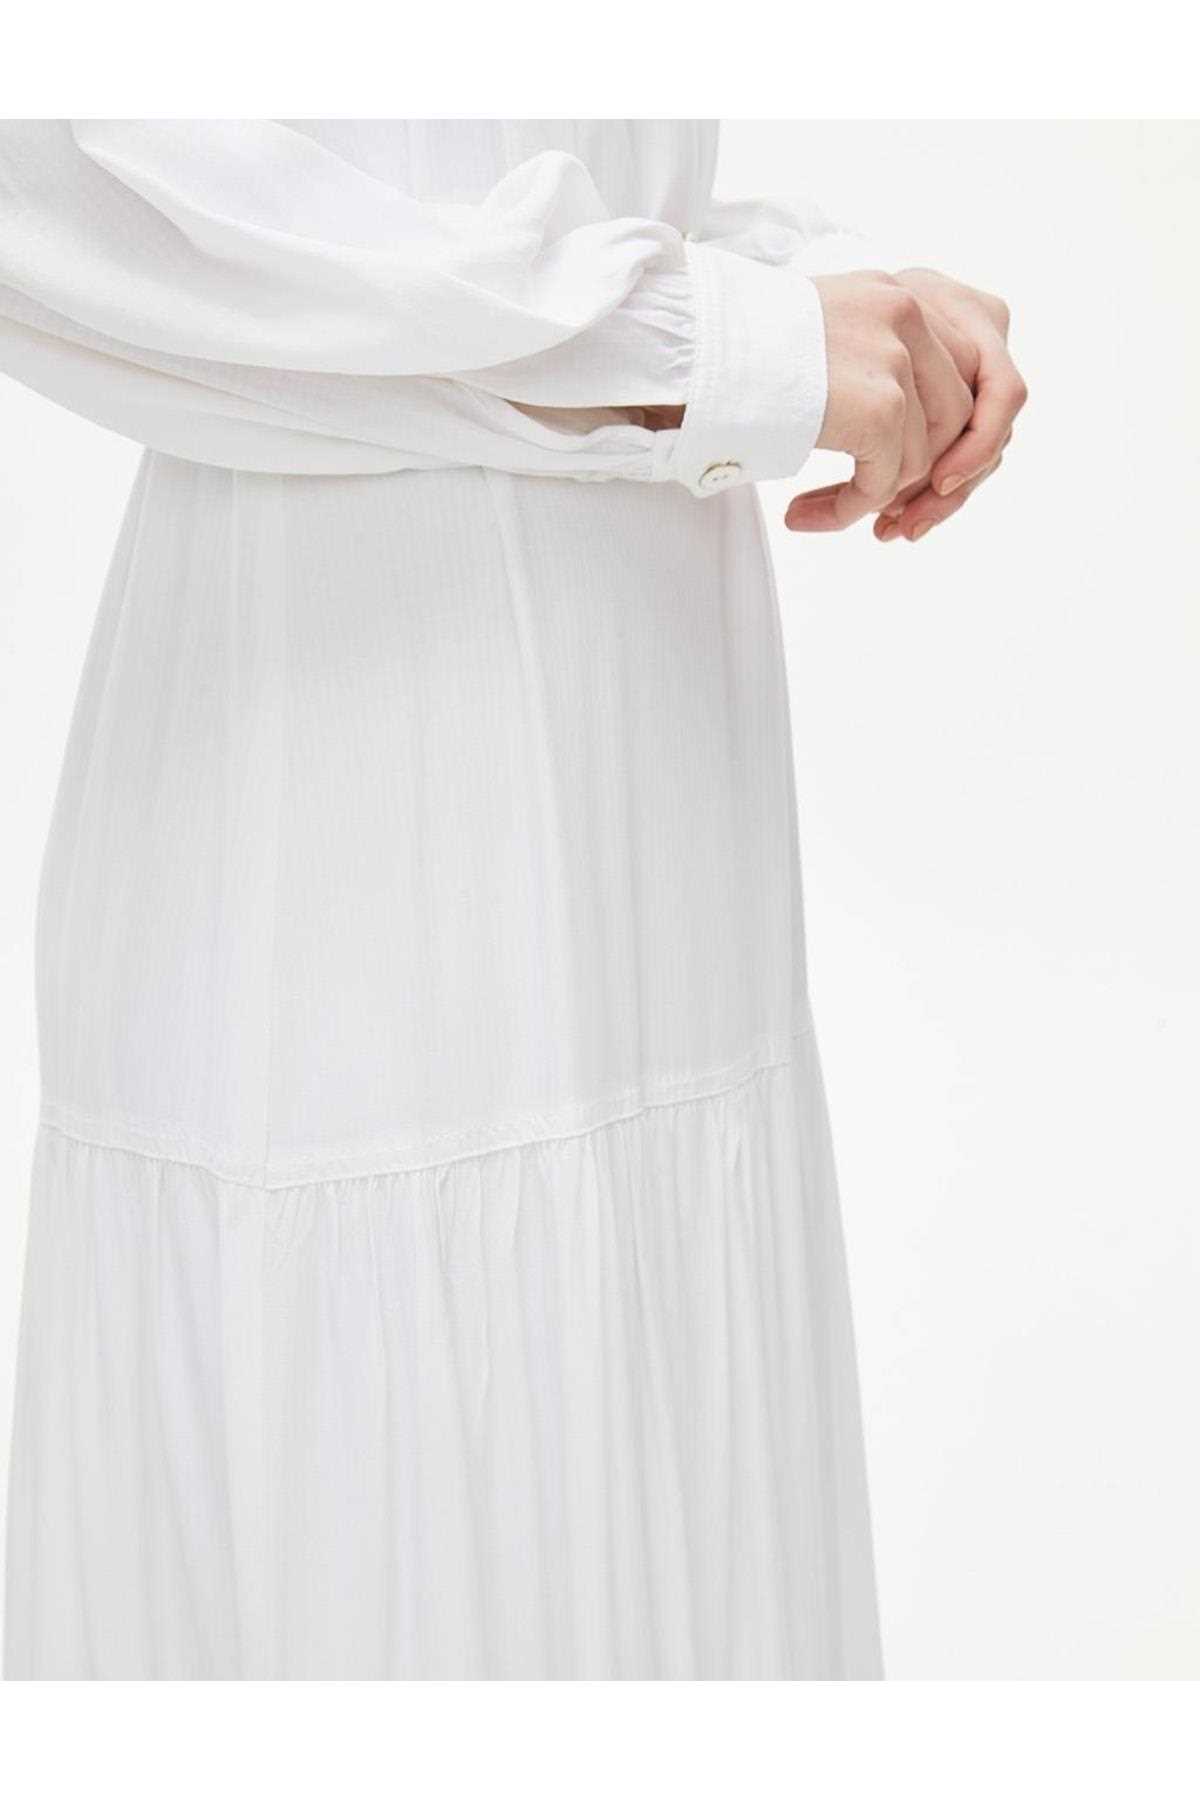 مدل پیراهن اسلامی زنانه برند کایرا رنگ سفید ty280048512